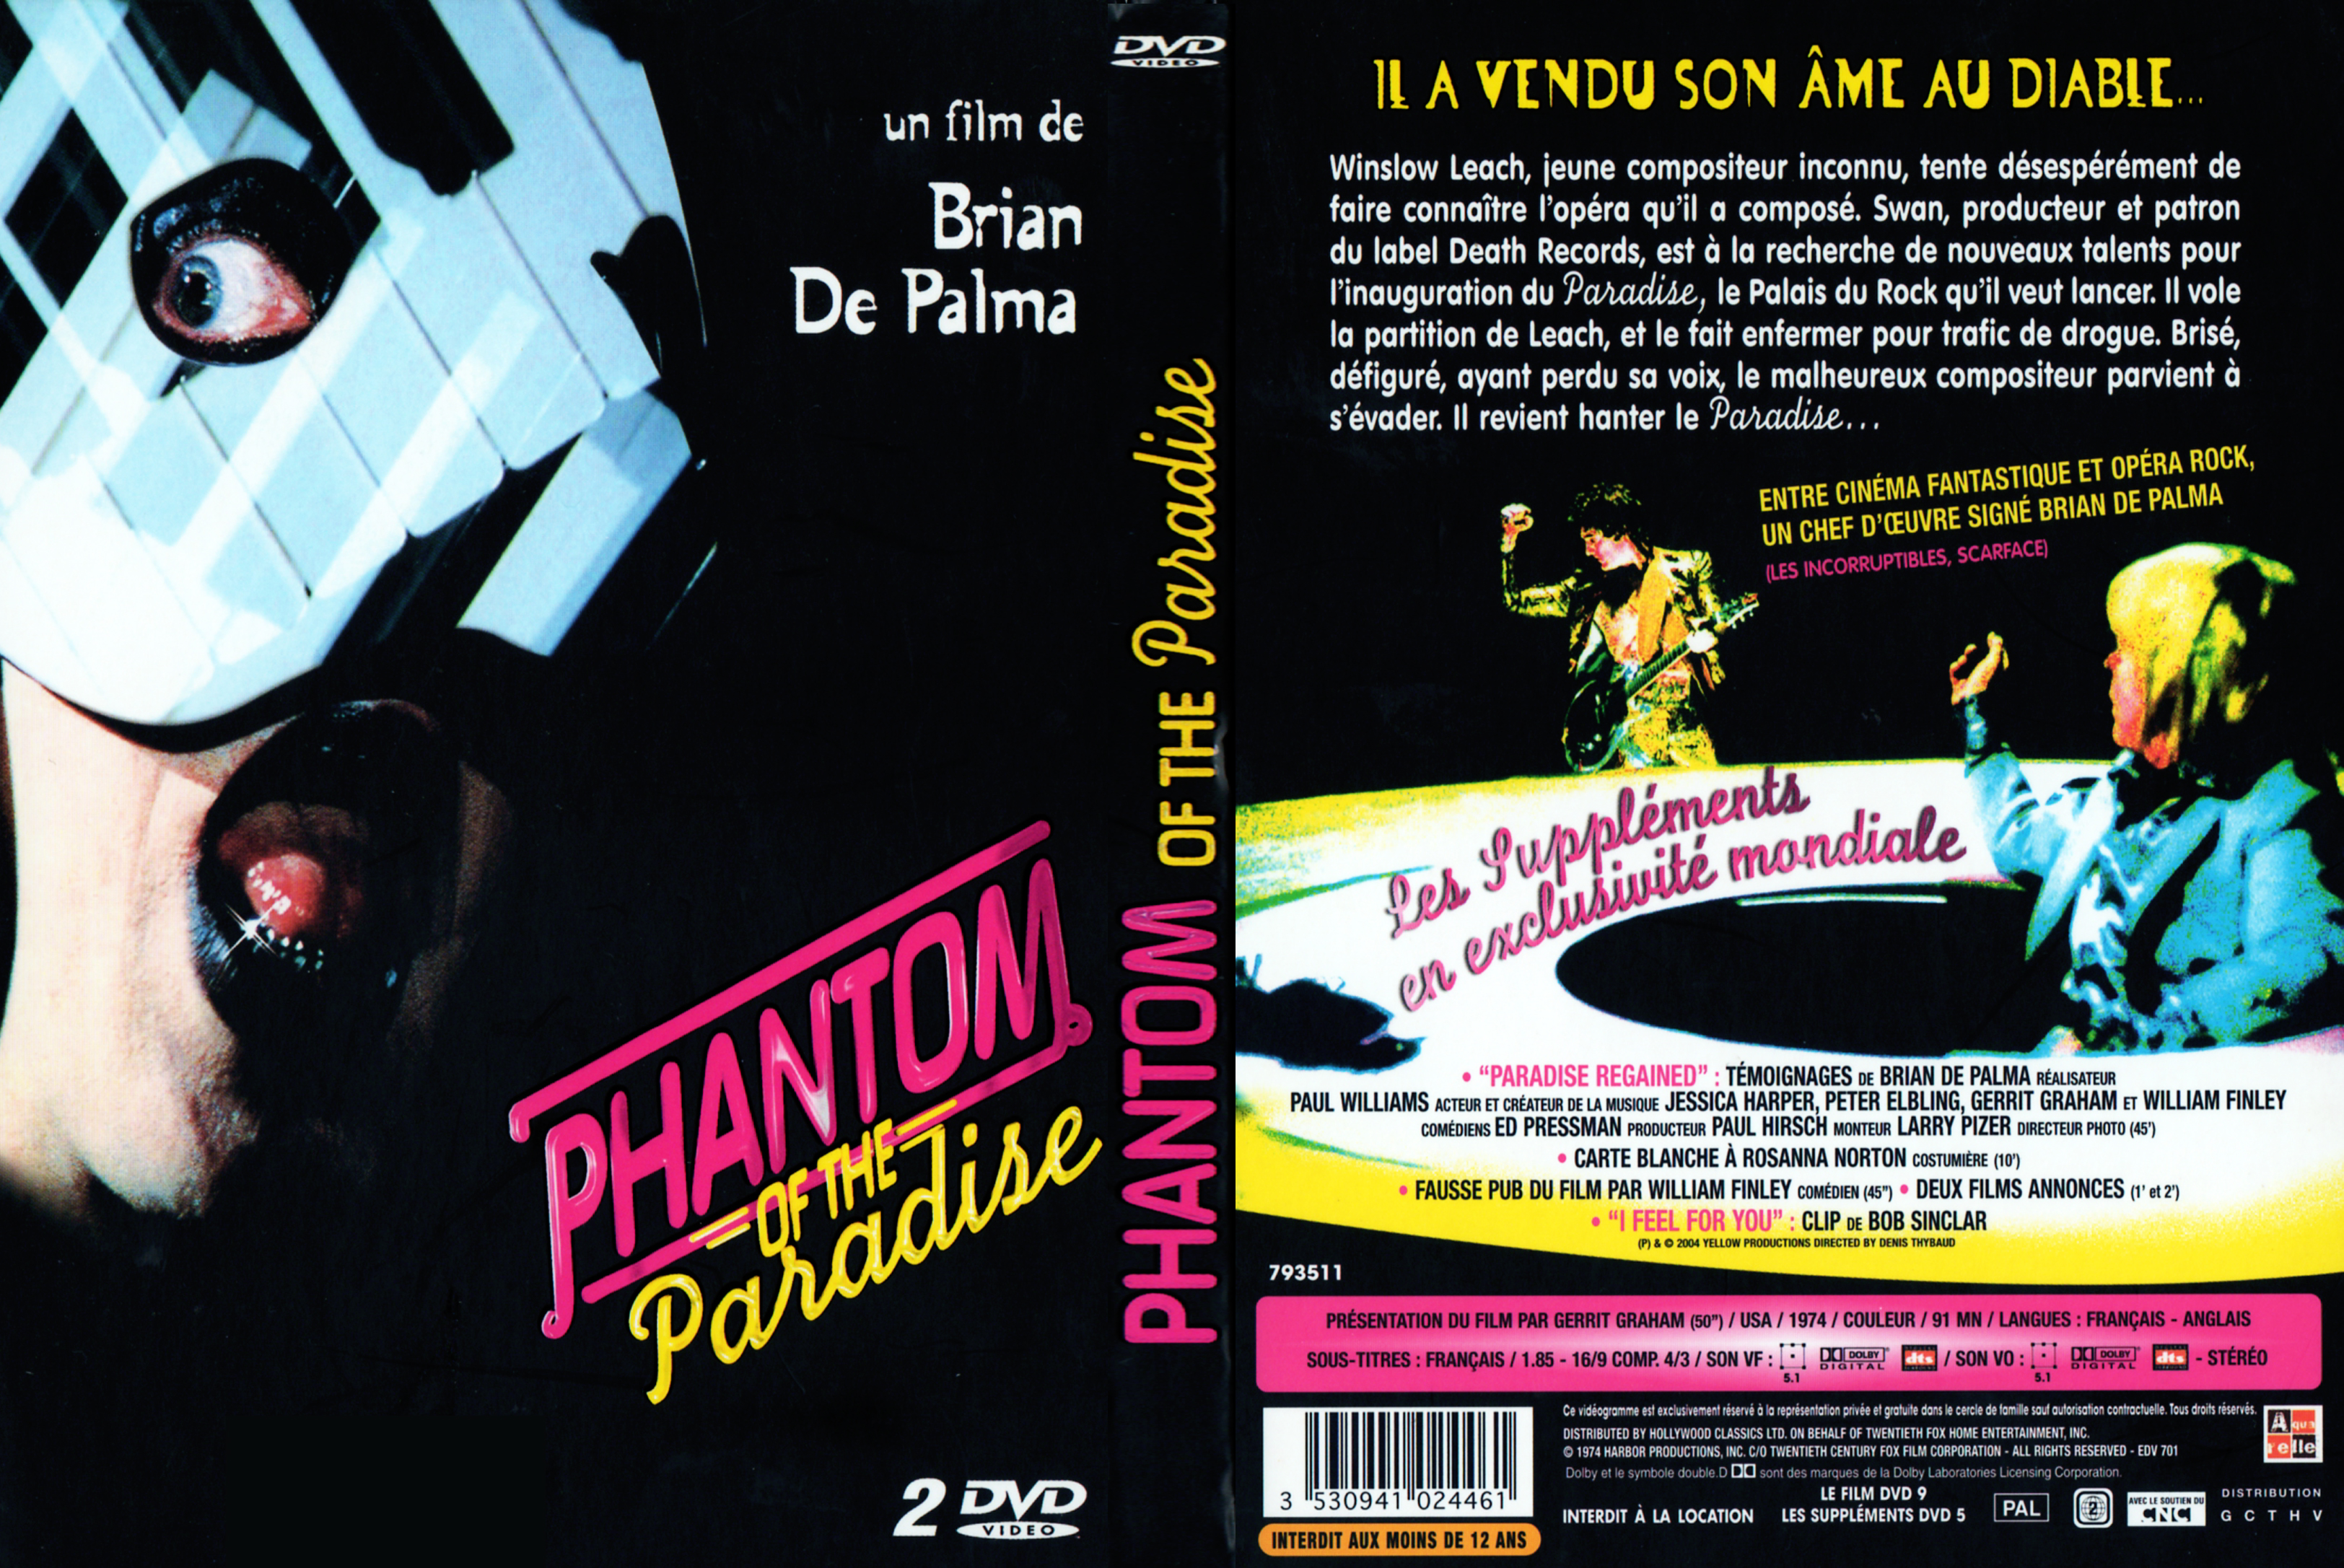 Jaquette DVD Phantom of the paradise v2